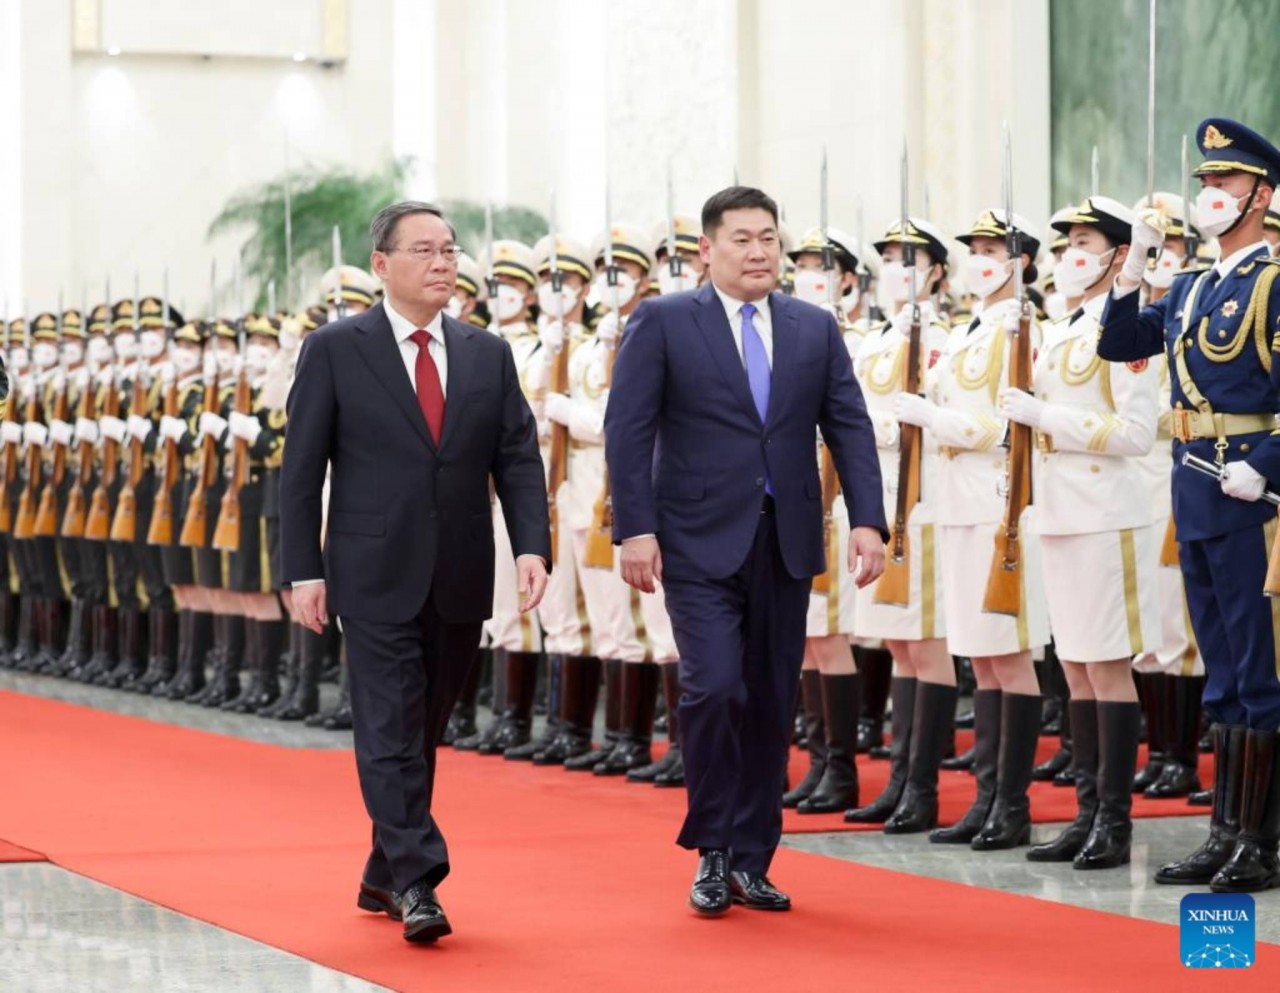 Thủ tướng Trung Quốc Lý Cường tổ chức lễ đón Thủ tướng Mông Cổ Luvsannamsrai Oyun-Erdene tại Sảnh phía Bắc của Đại lễ đường Nhân dân trước cuộc hội đàm của họ ở Bắc Kinh, thủ đô của Trung Quốc, ngày 28 tháng 6 năm 2023. (Tân Hoa Xã/Ding Haitao)